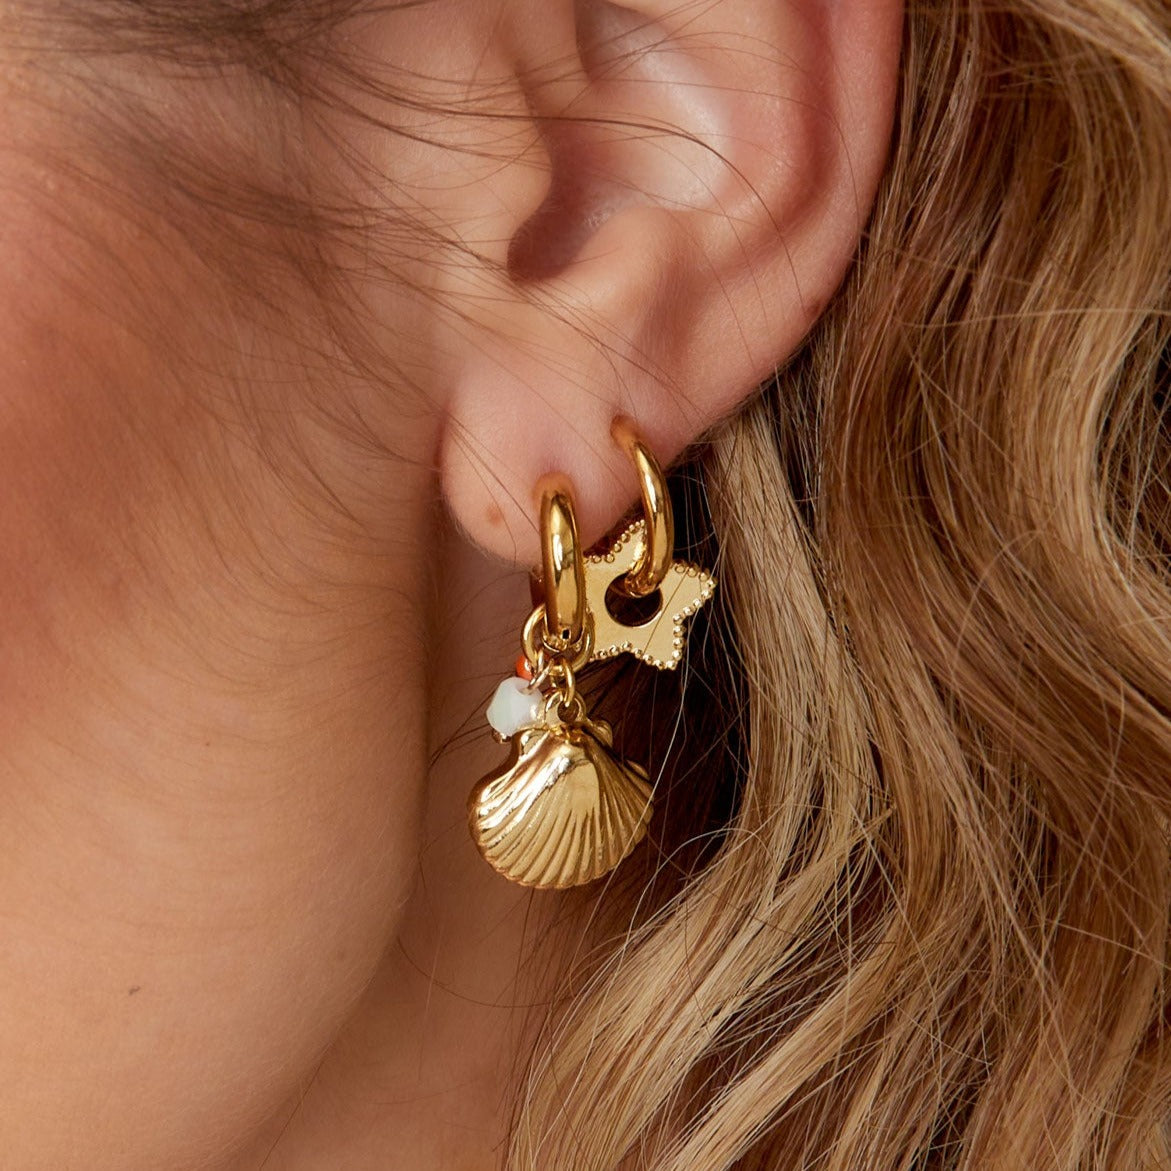 Oval earrings pearl